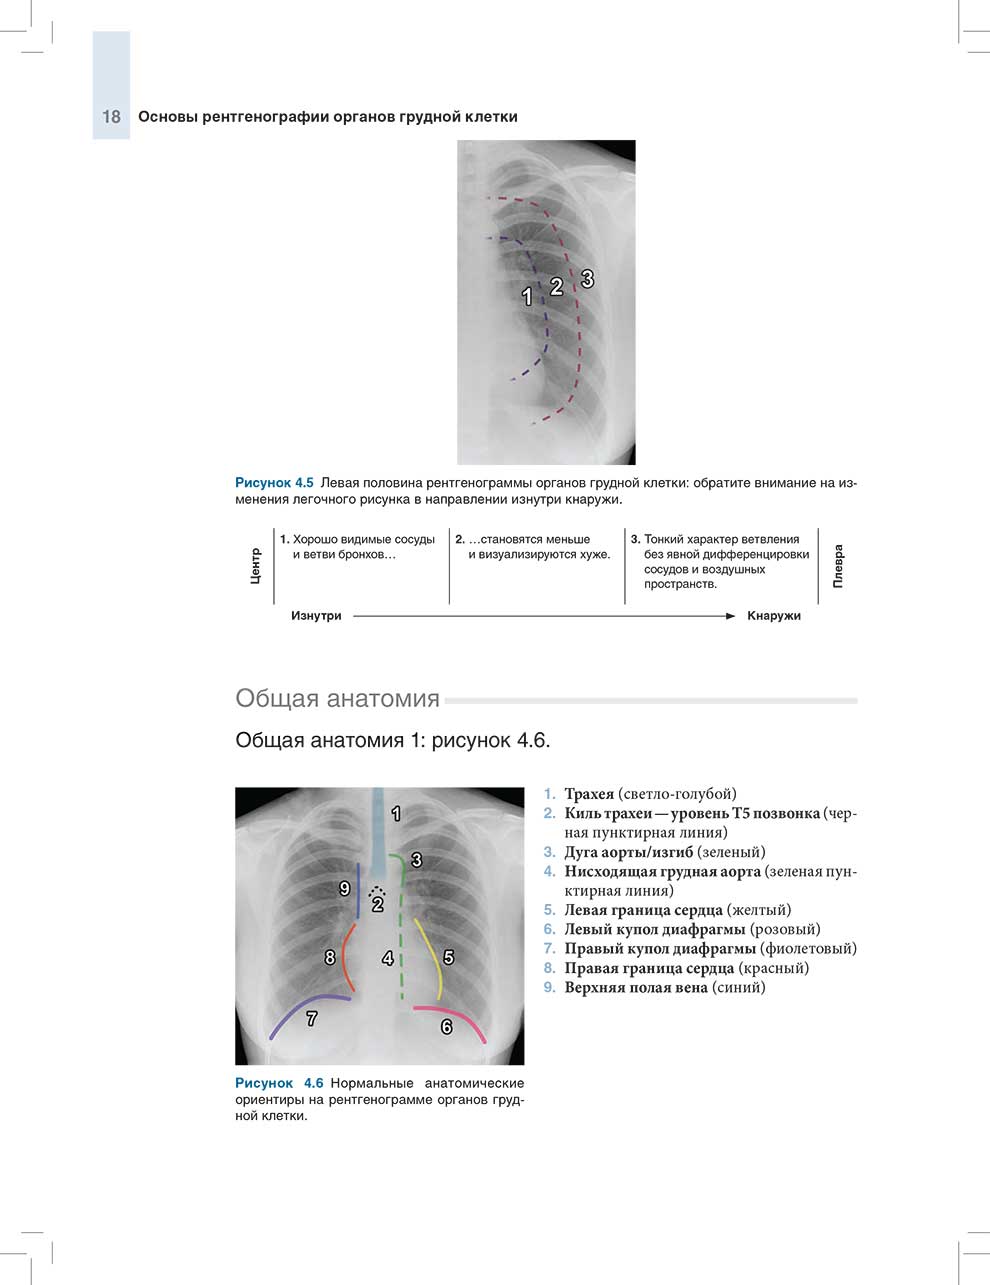 Рисунок 4.6 Нормальные анатомические ориентиры на рентгенограмме органов грудной клетки